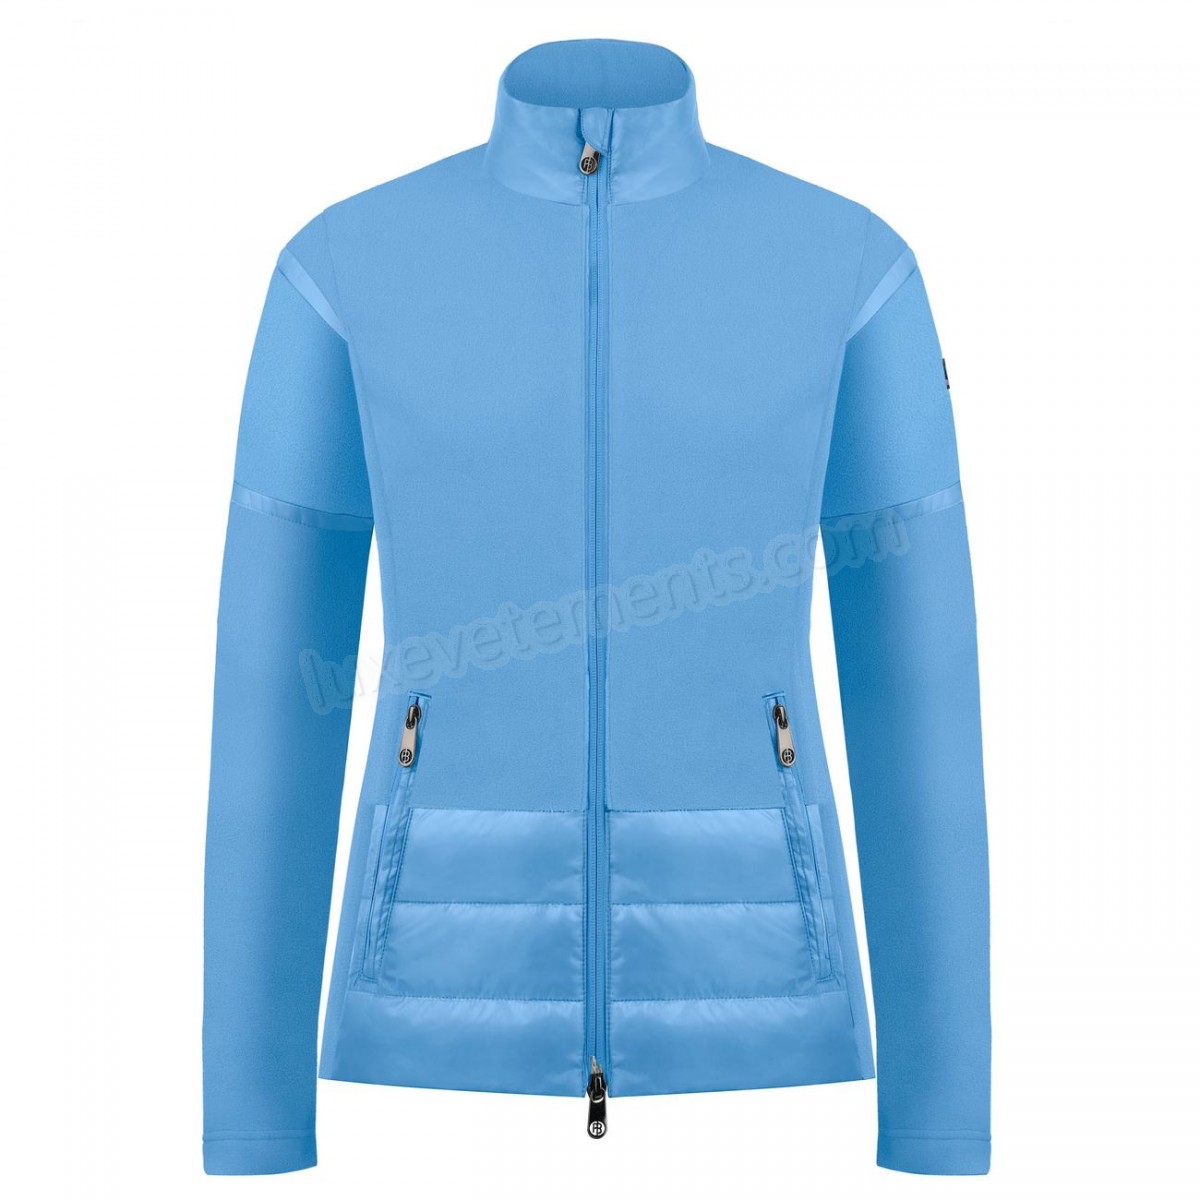 Poivre Blanc-Sports d'hiver femme POIVRE BLANC Veste Polaire Poivre Blanc Hybrid Fleece Jacket 1601 Polar Blue Femme Vente en ligne - -0